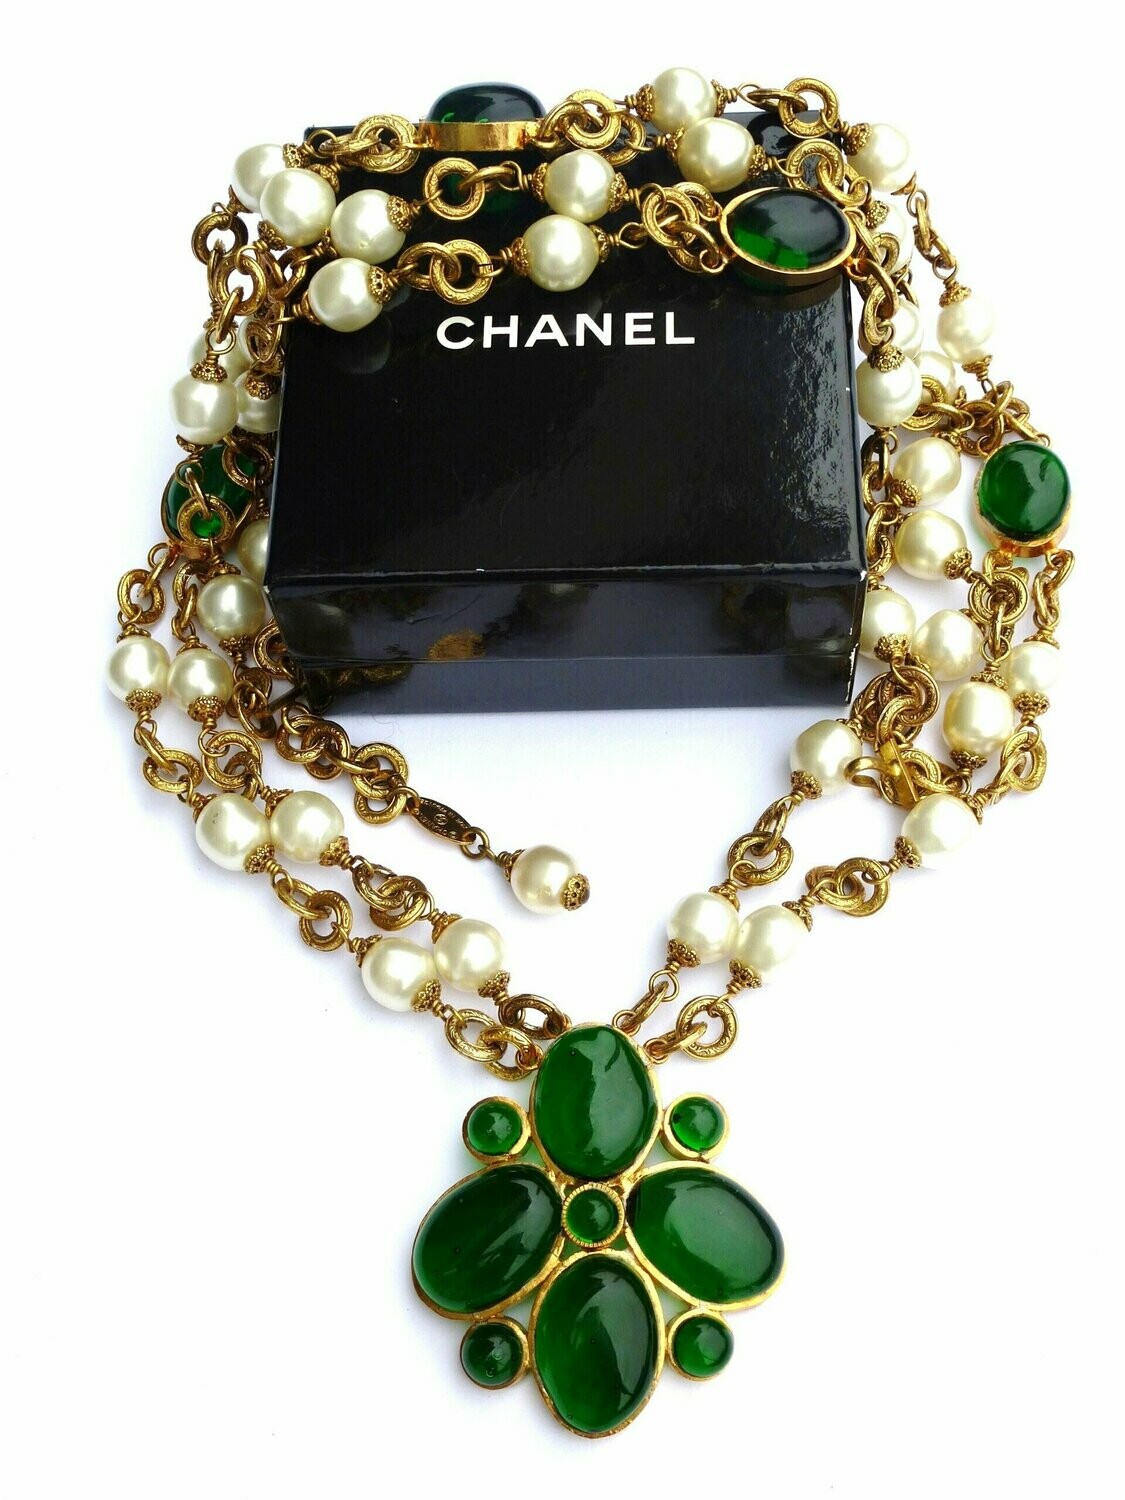 Chanel Vintage Kette/Sautoir mit grünem Gripoix Anhänger, sign